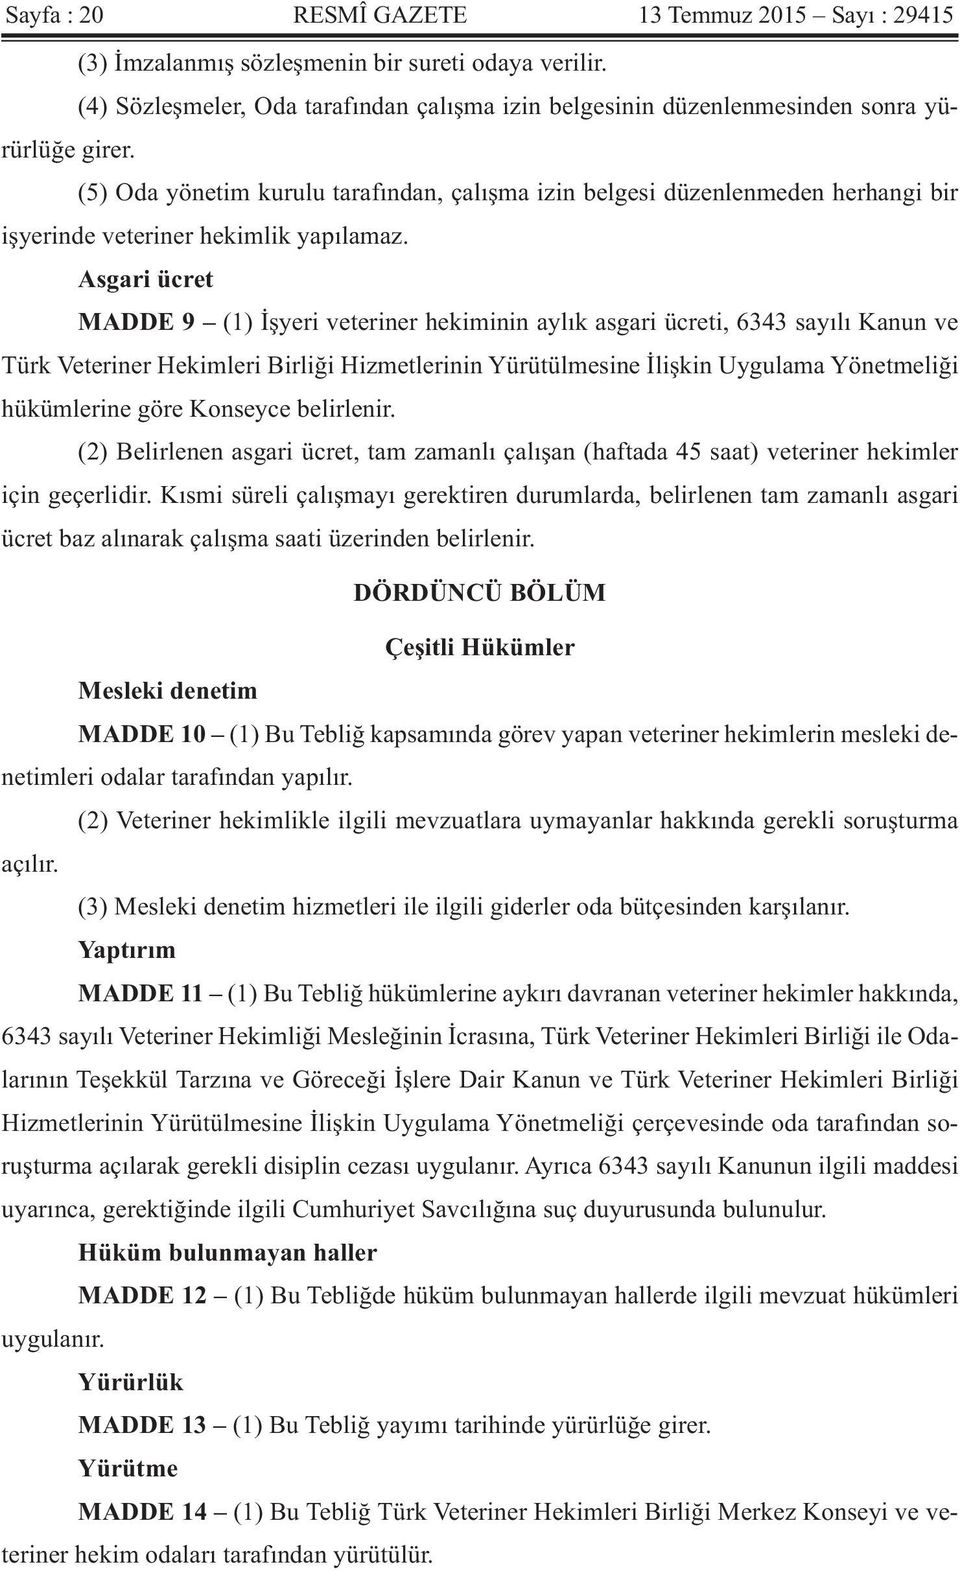 Asgari ücret MADDE 9 (1) İşyeri veteriner hekiminin aylık asgari ücreti, 6343 sayılı Kanun ve Türk Veteriner Hekimleri Birliği Hizmetlerinin Yürütülmesine İlişkin Uygulama Yönetmeliği hükümlerine